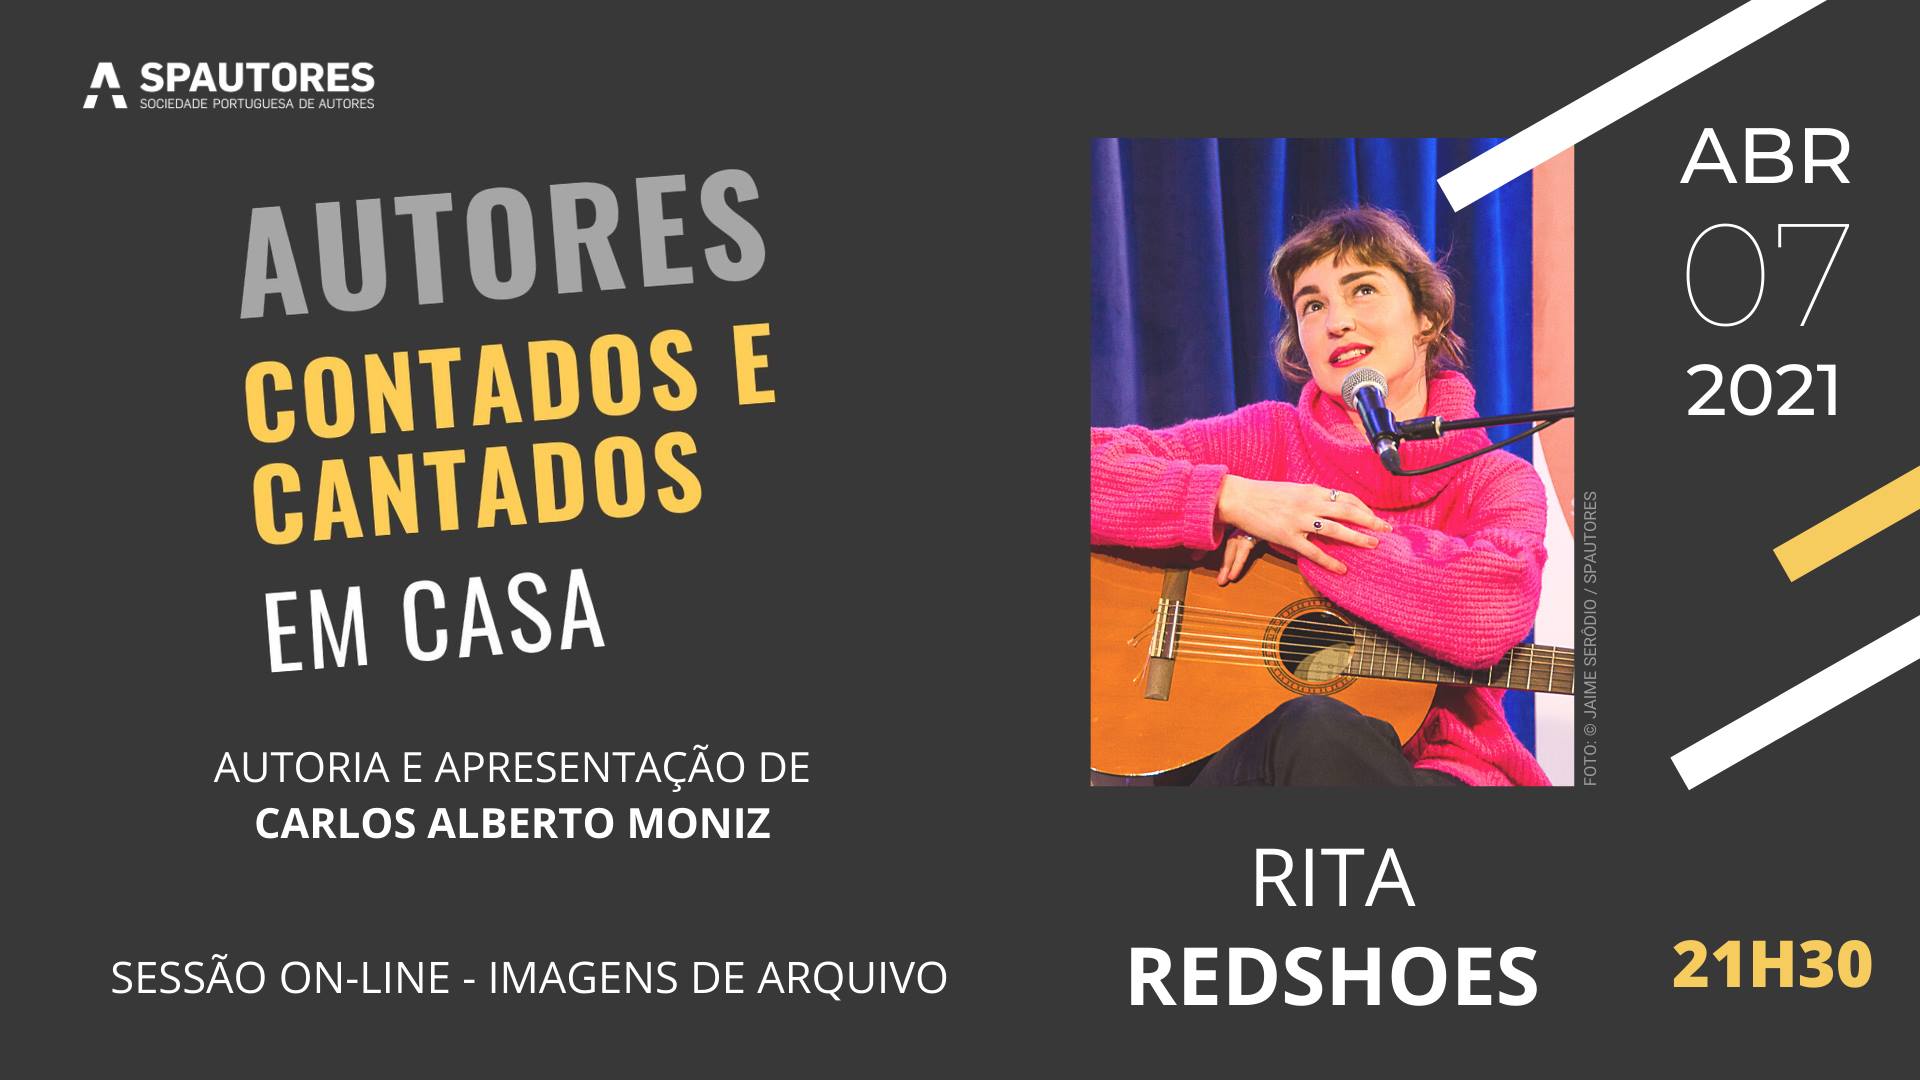 Rita Redshoes - Autores Contados e Cantados Em Casa